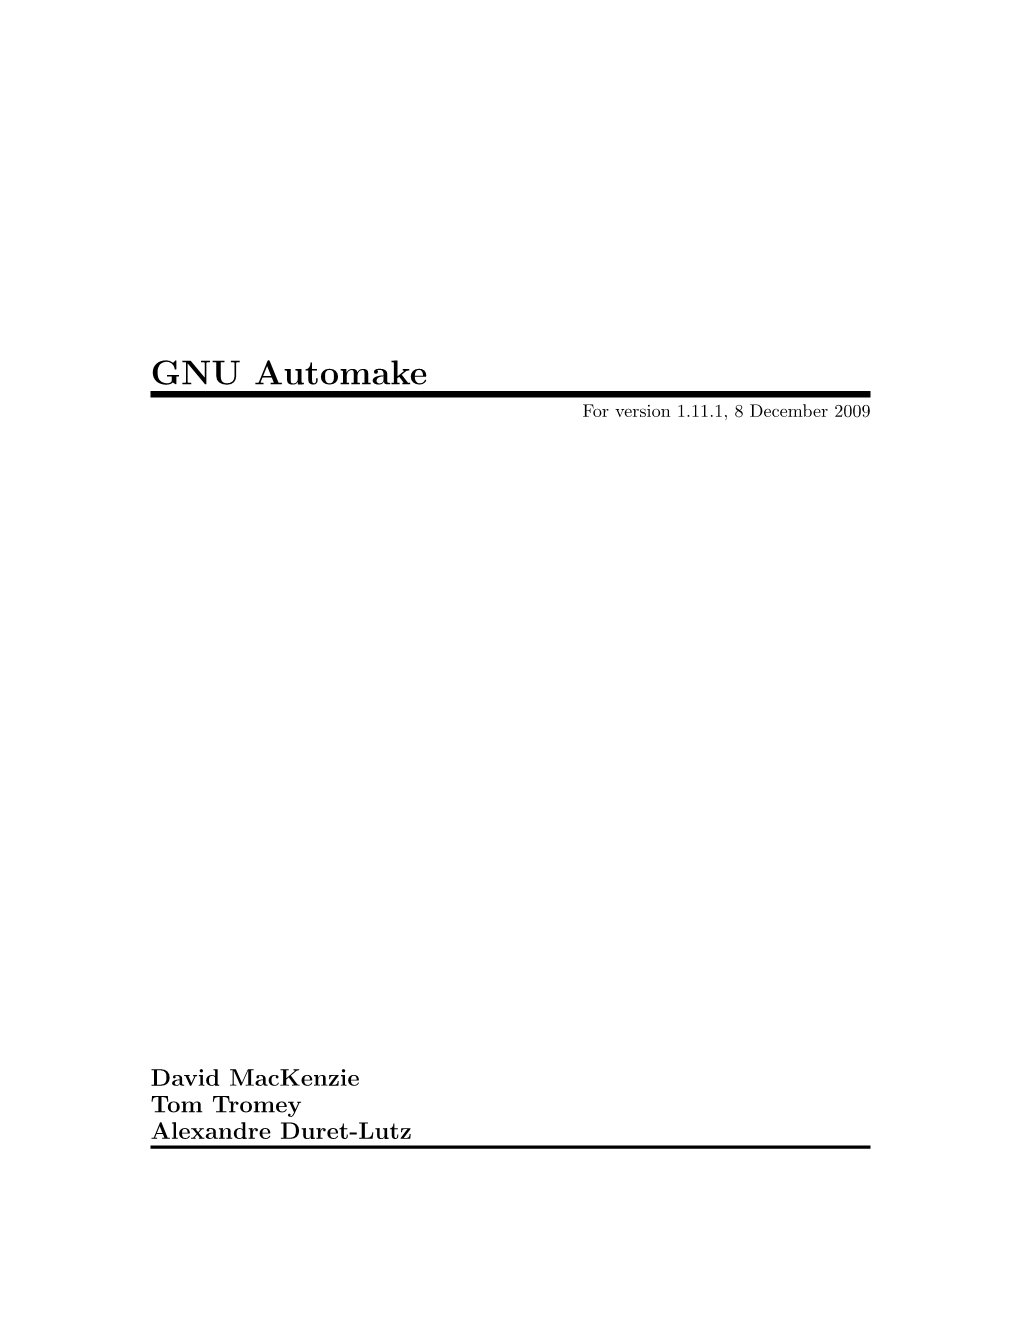 GNU Automake for Version 1.11.1, 8 December 2009